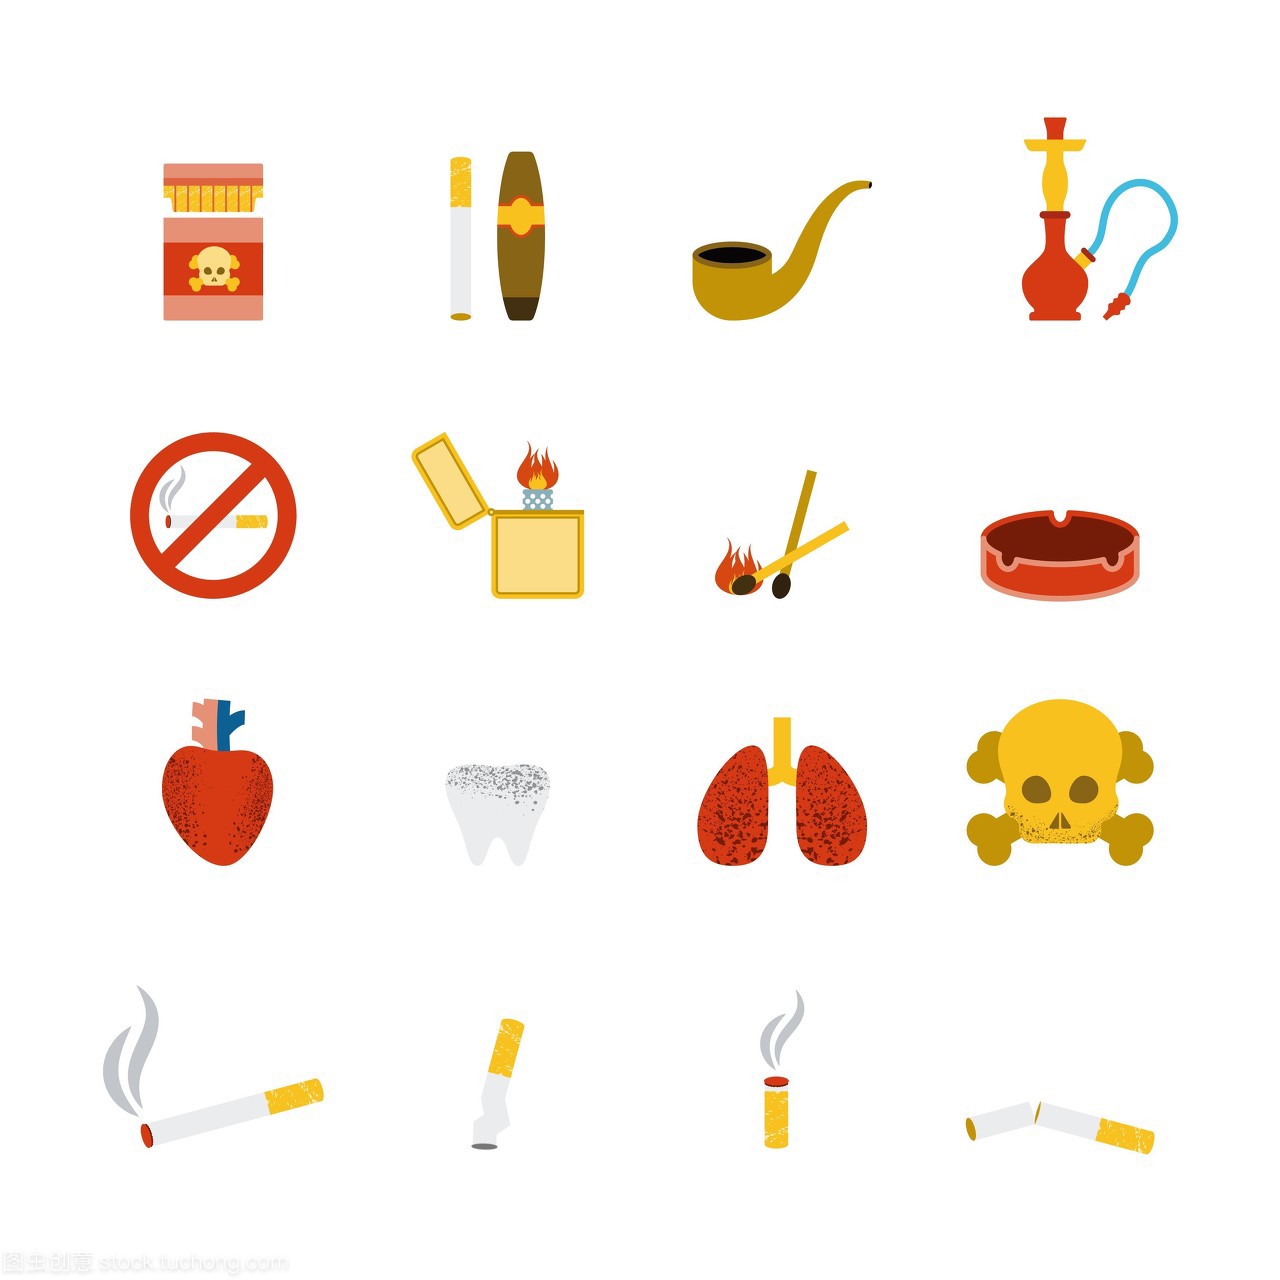 烟灰缸,火柴杆,雪茄,吸烟,肺,比赛,打火机,有害,抽